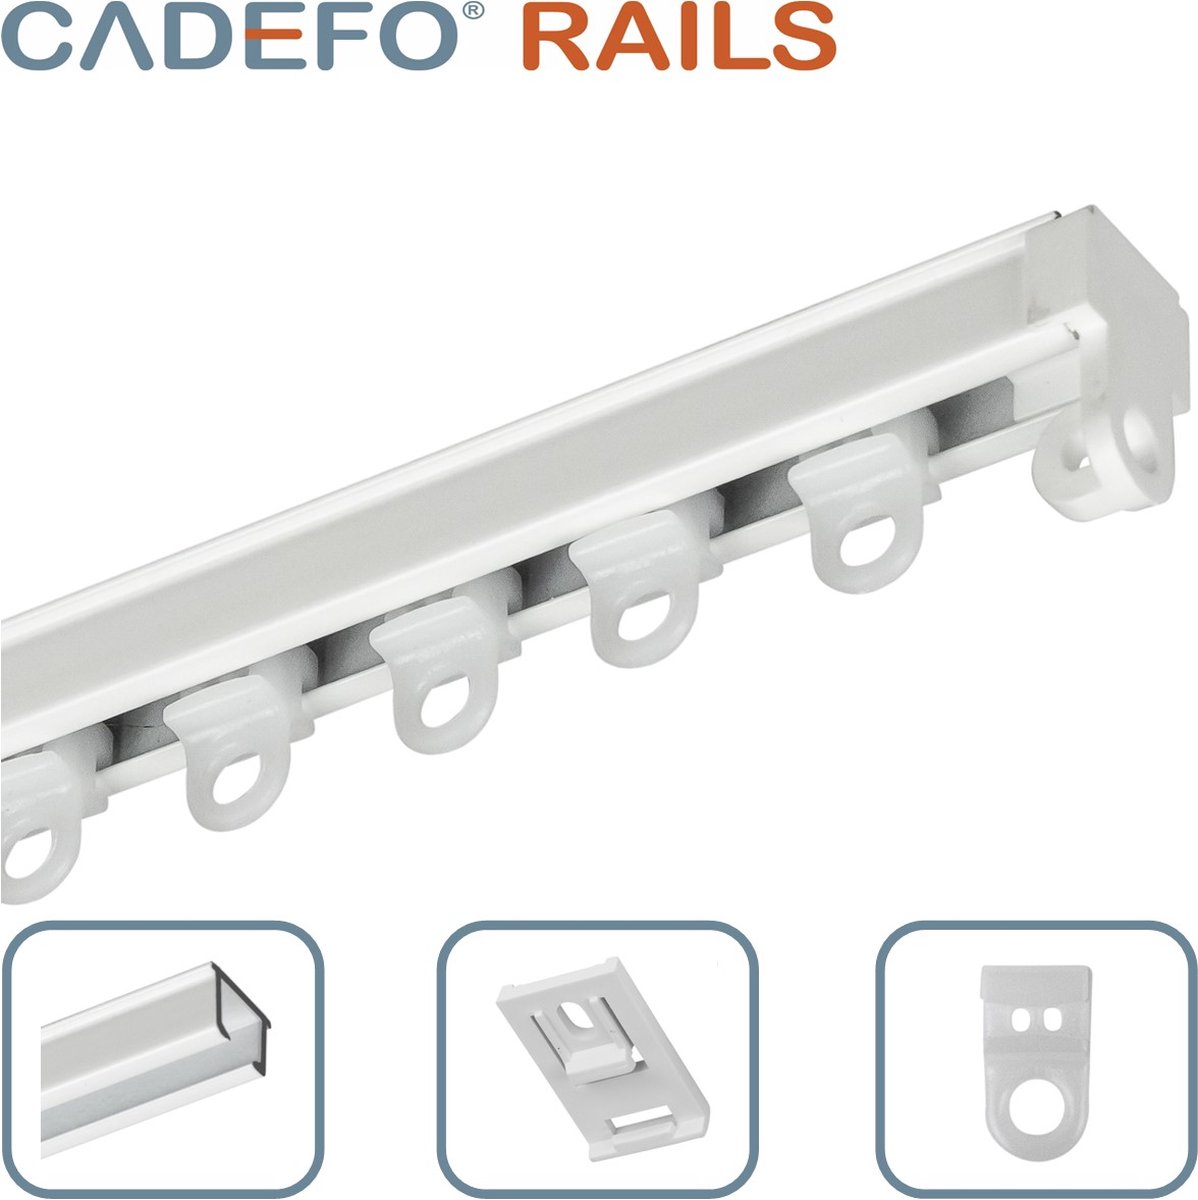 CADEFO RAILS (151 - 200 cm) Gordijnrails - Compleet op maat! - UIT 1 STUK - Leverbaar tot 6 meter - Plafondbevestiging - Lengte 168 cm